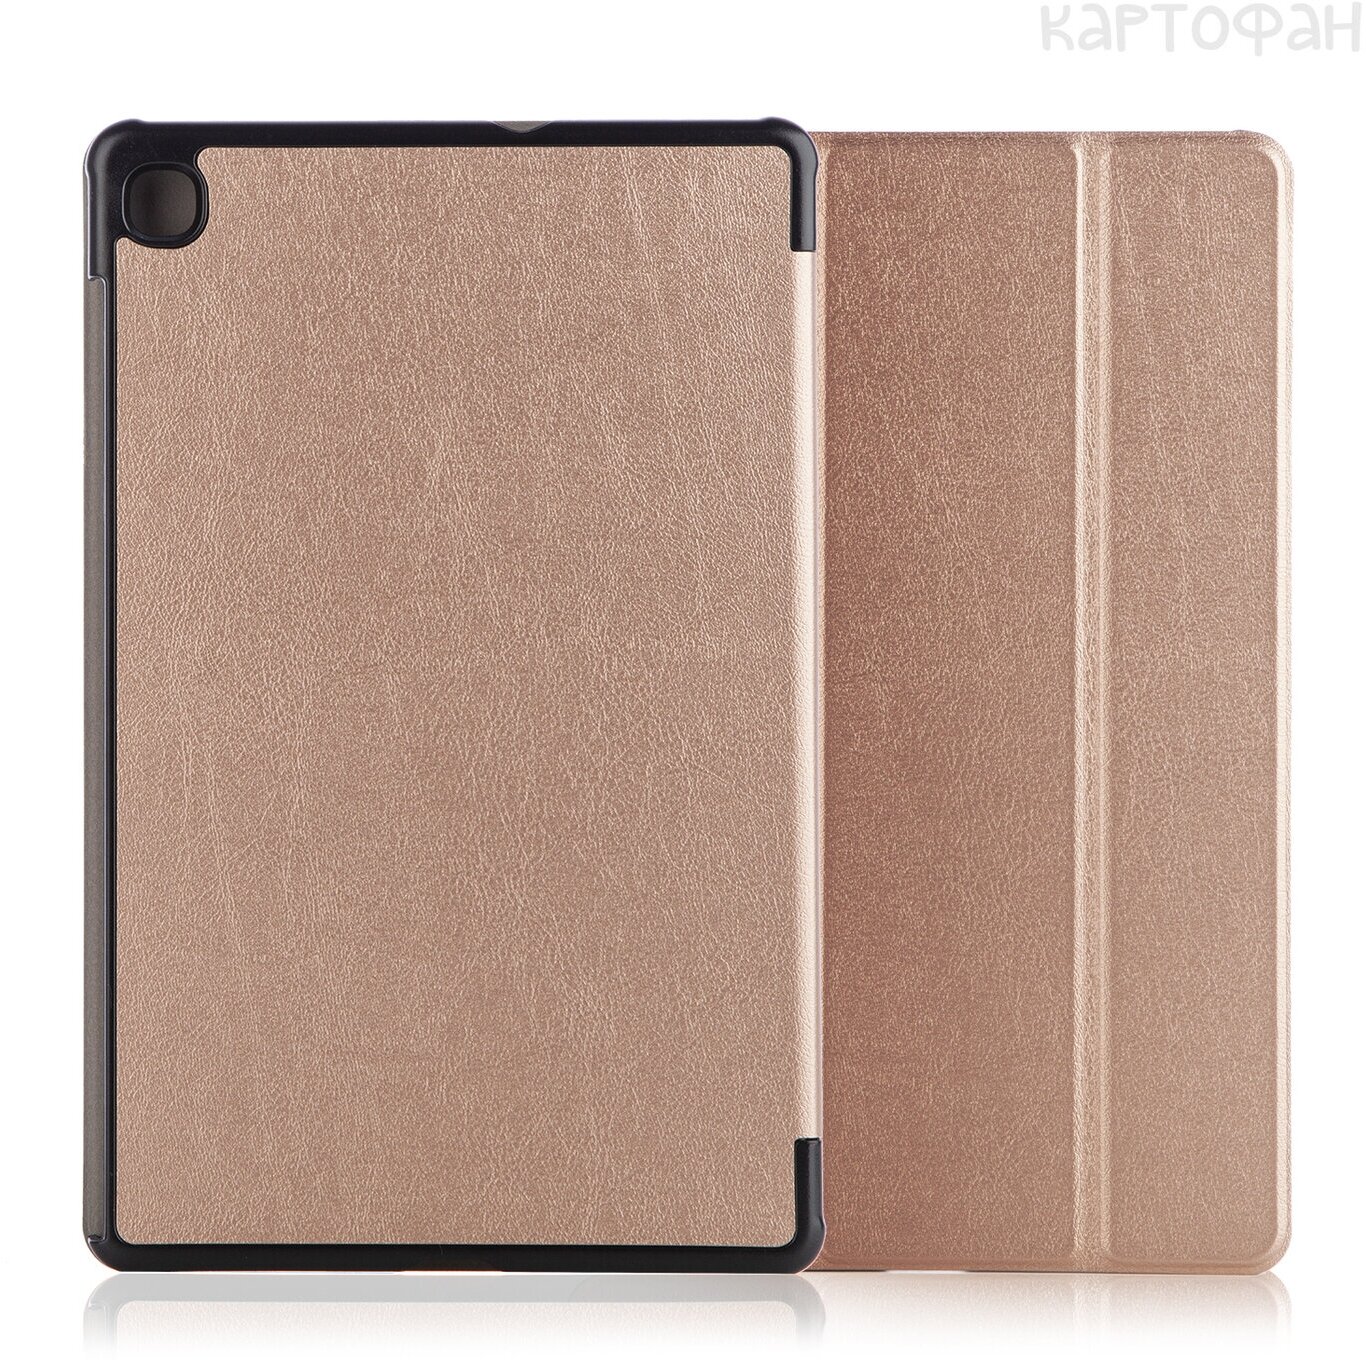 Чехол-книжка для планшета Samsung Galaxy Tab S6 Lite с диагональю 10.4 дюйма (SM-P615 и SM-P610), розовый